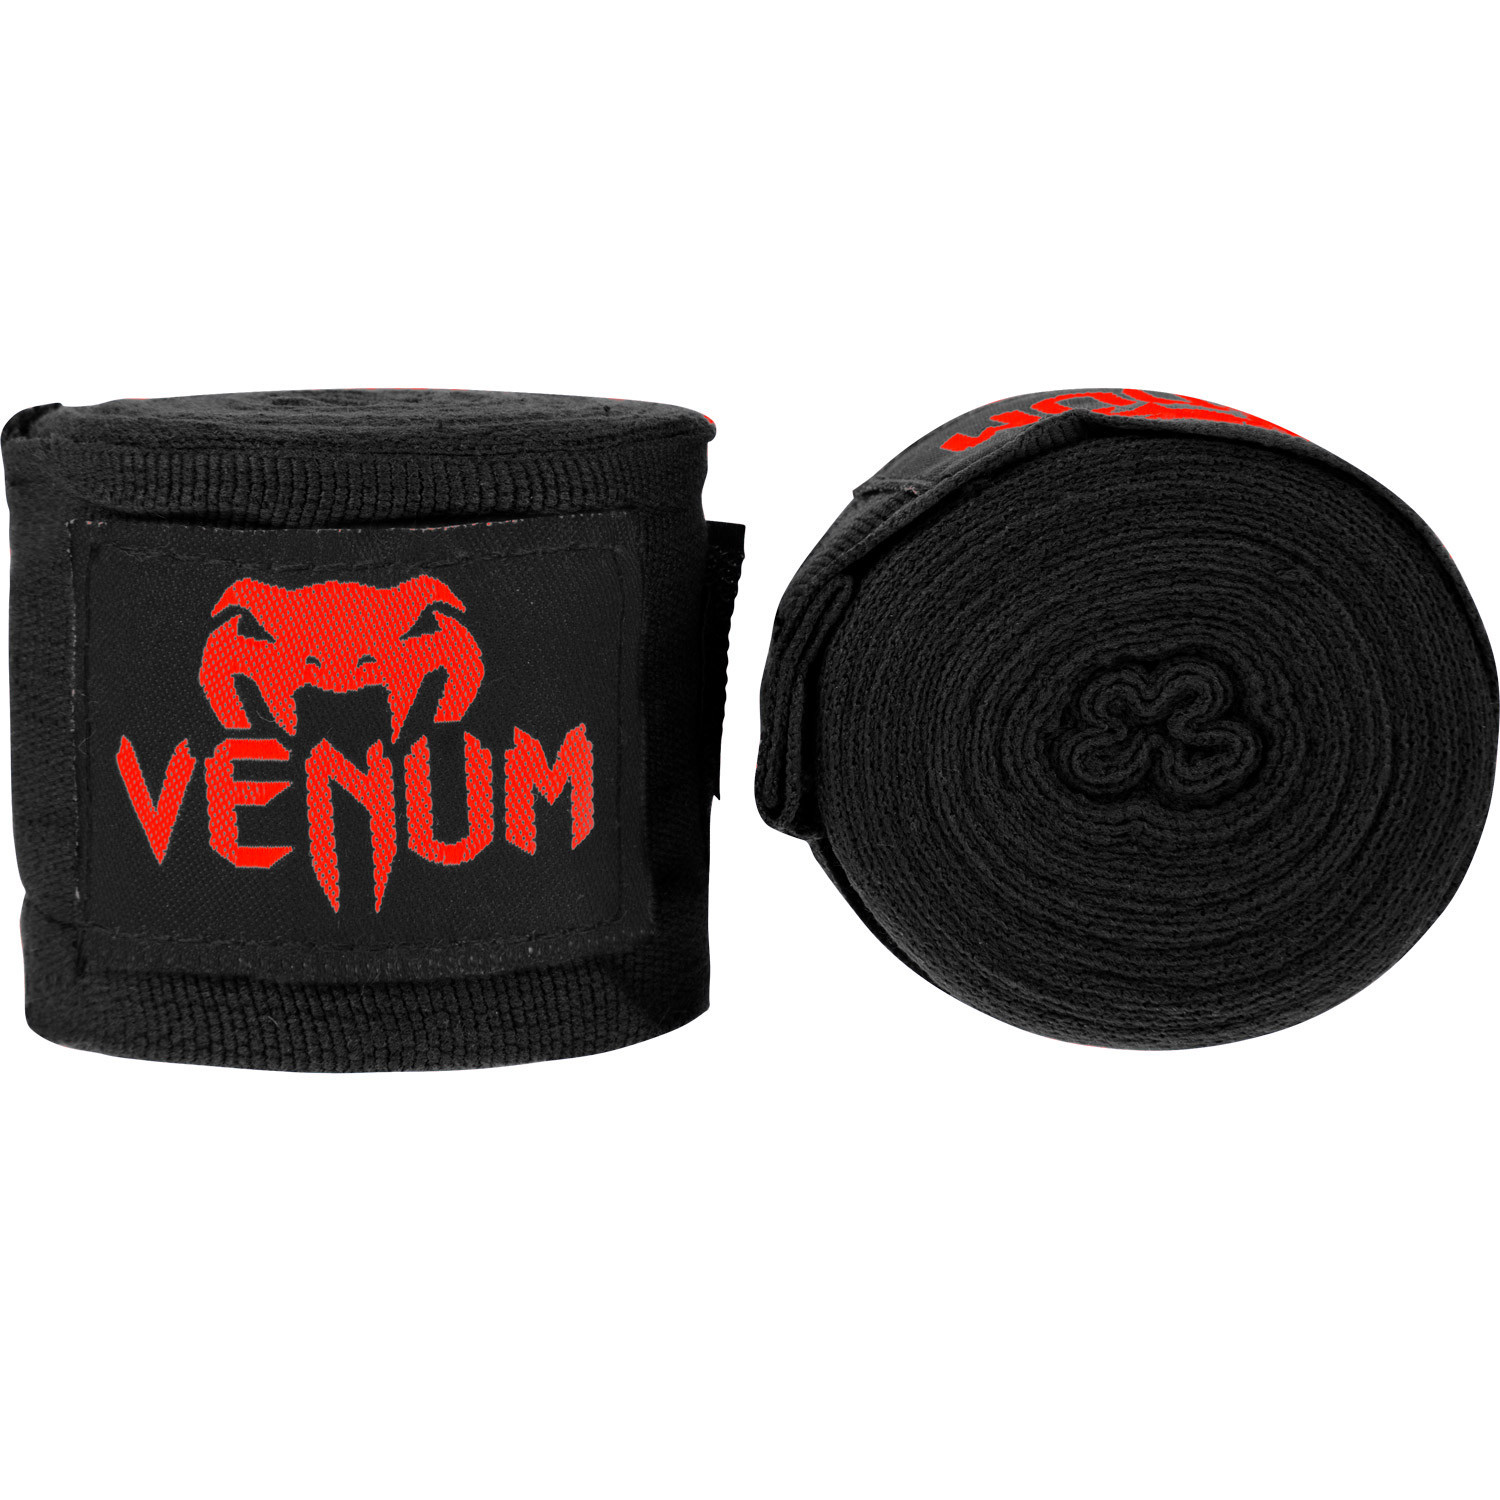 бинты боксерские venum kontact 2,5m black/red боксерские